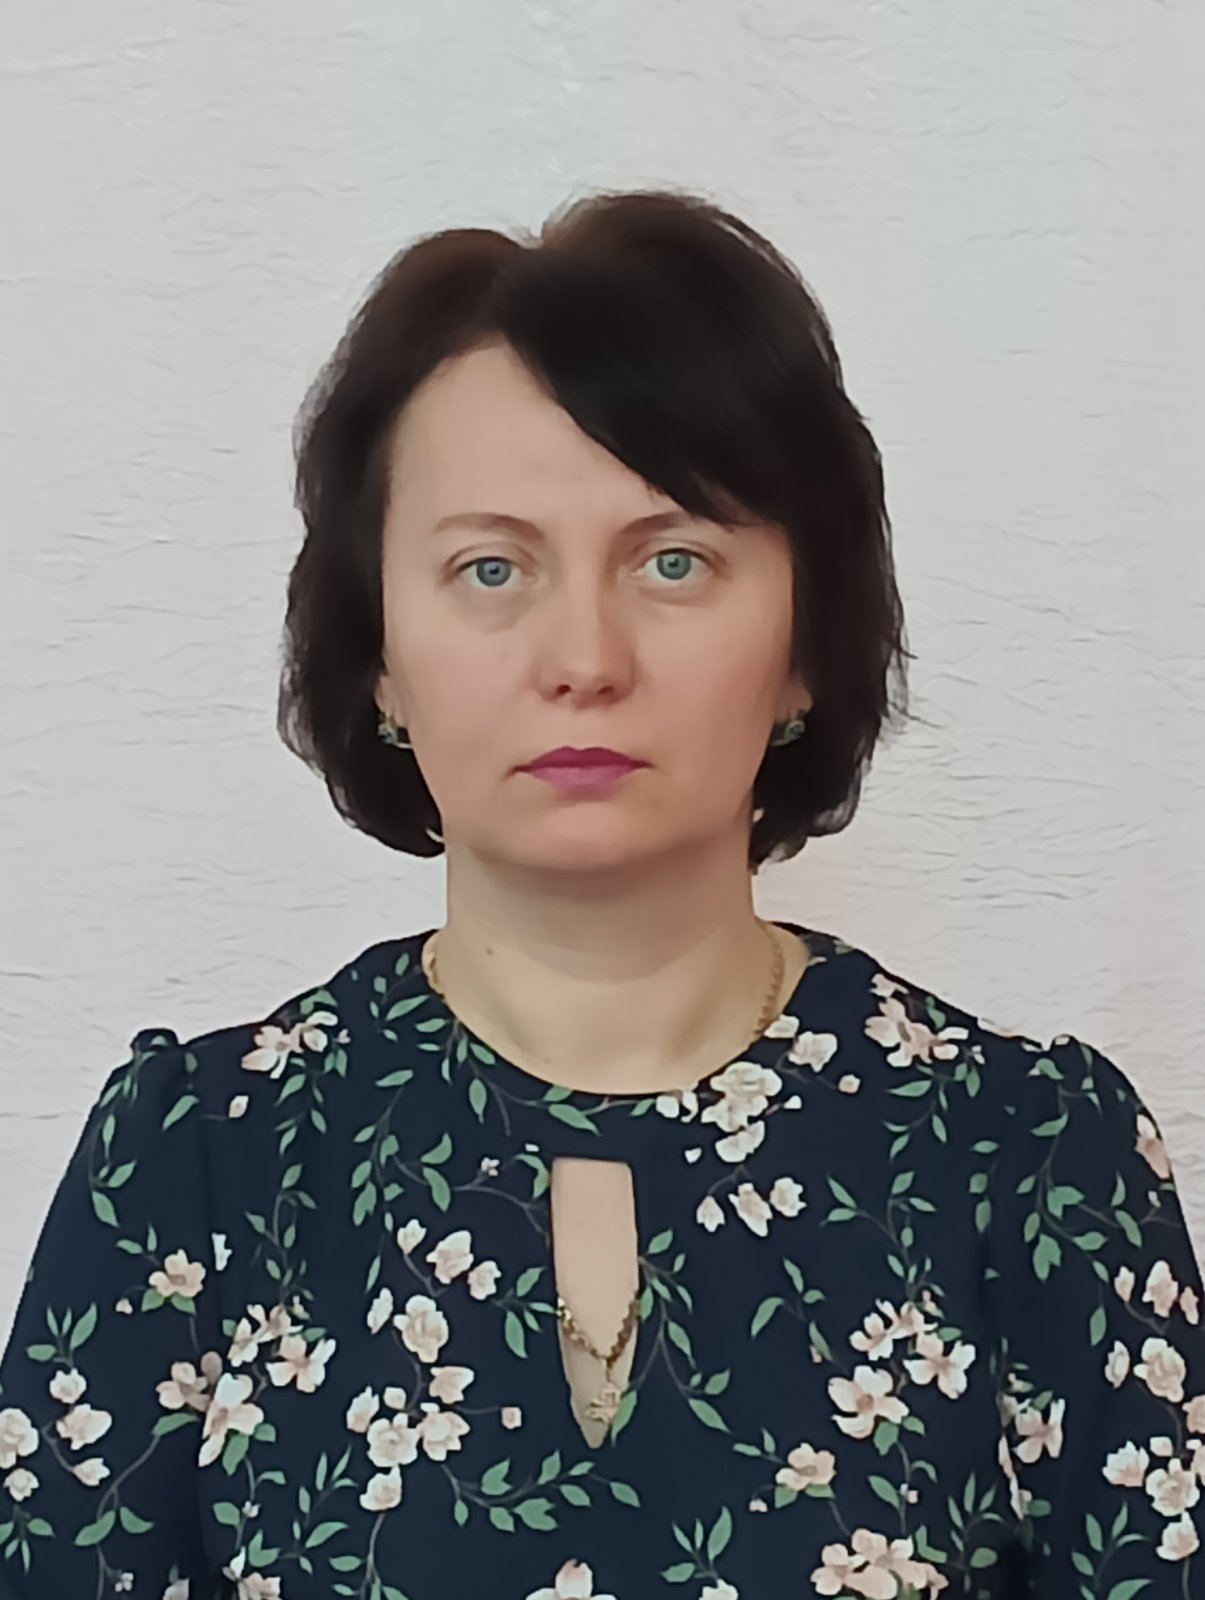 воспитатель первой квалификационной категории Бакина Кристина Владимировна.